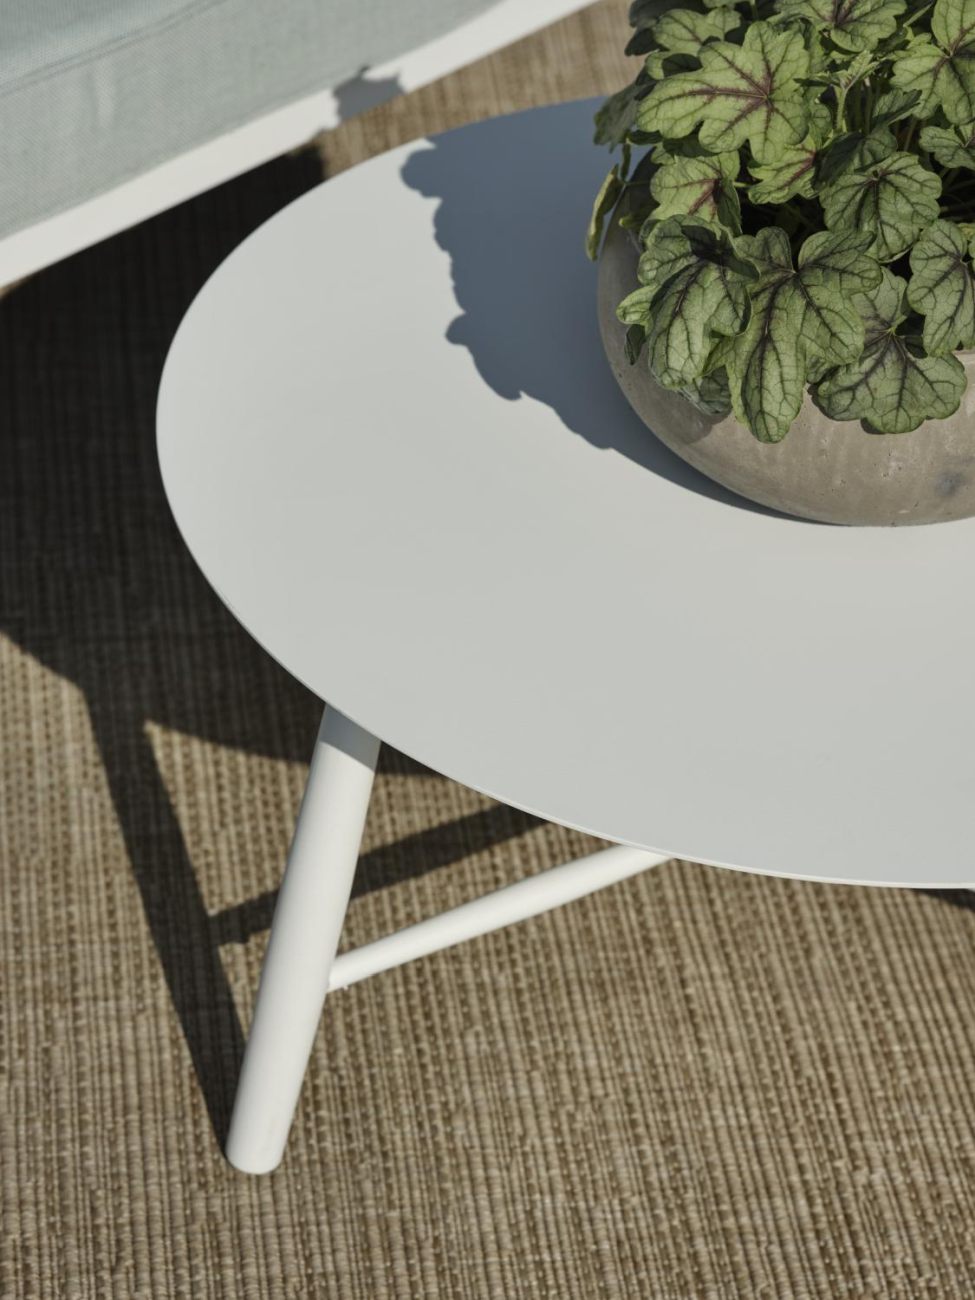 Der Gartenbeistelltisch Vannes überzeugt mit seinem modernen Design. Gefertigt wurde die Tischplatte aus Metall, welche einen weißen Farbton besitzt. Das Gestell ist auch aus Metall und hat eine weiße Farbe. Der Tisch besitzt einen Durchmesser von 60 cm.